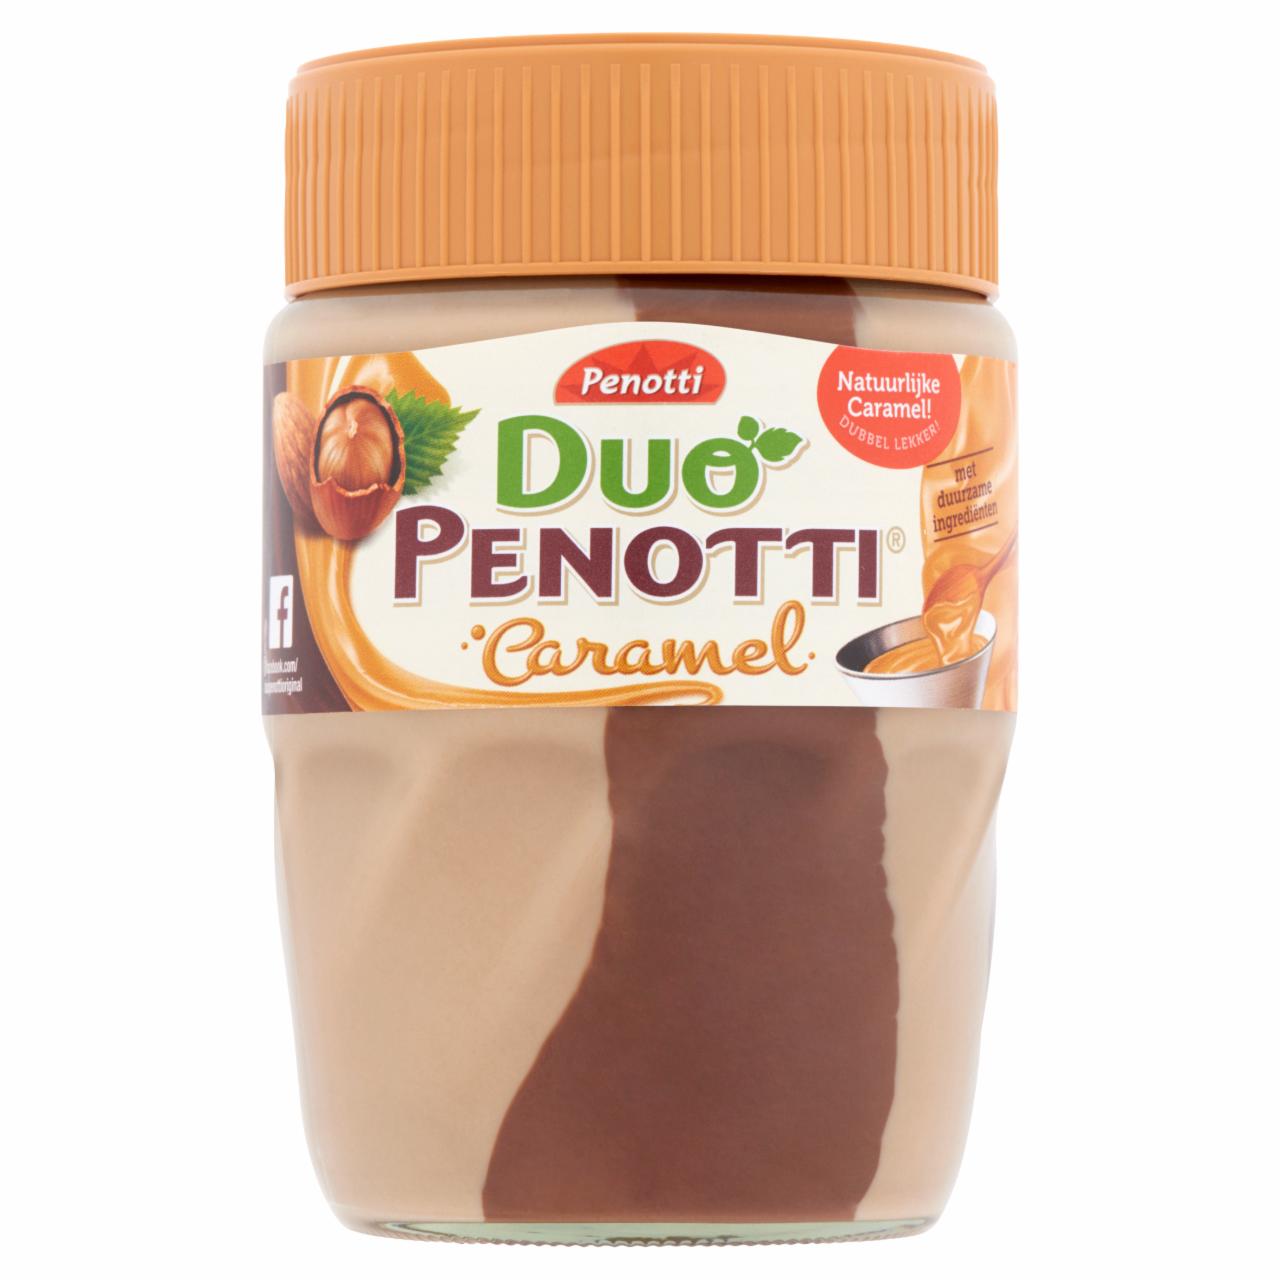 Photo - Duo Penotti Caramel Chocolate-Caramel Peanut Butter Spread 350 g